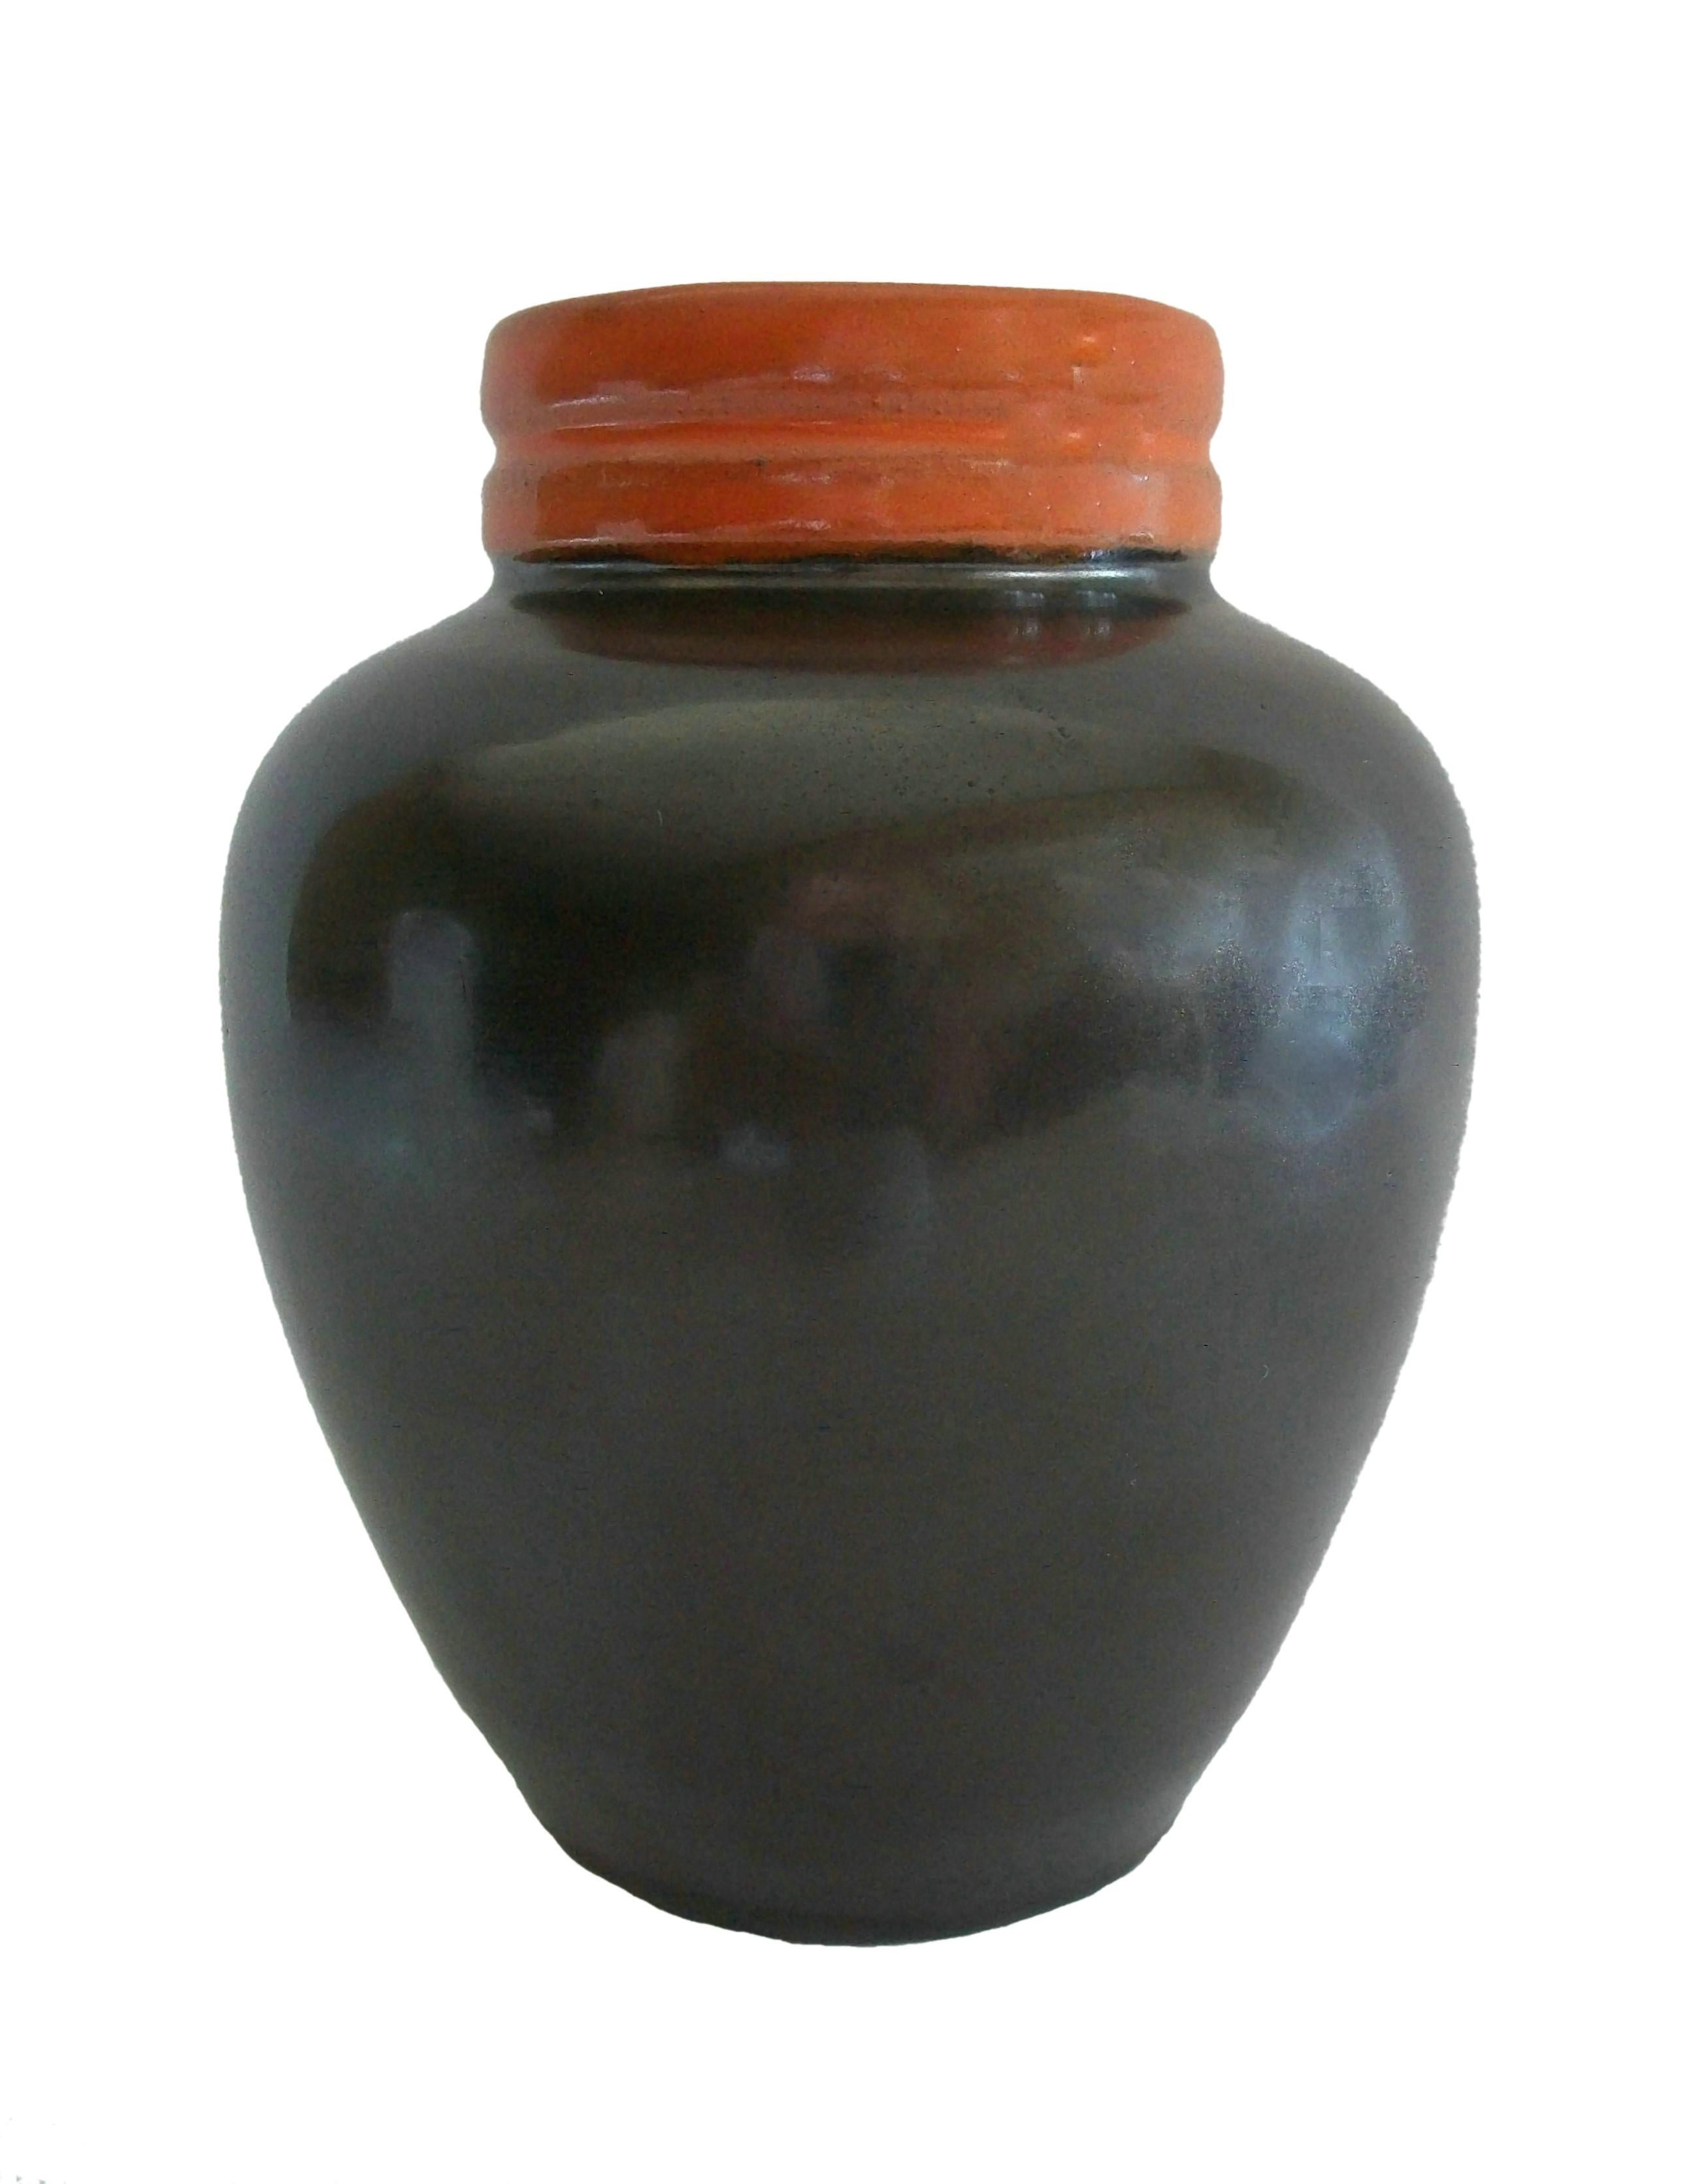 UPSALA EKEBY - Vase en céramique de studio du milieu du siècle - glaçure noire satinée sur le corps en argile rouge avec une bande de couleur rouille sur le col - signé 'EKEBY 1504' sur la base - Suède - vers 1950.

Excellent état vintage - aucune